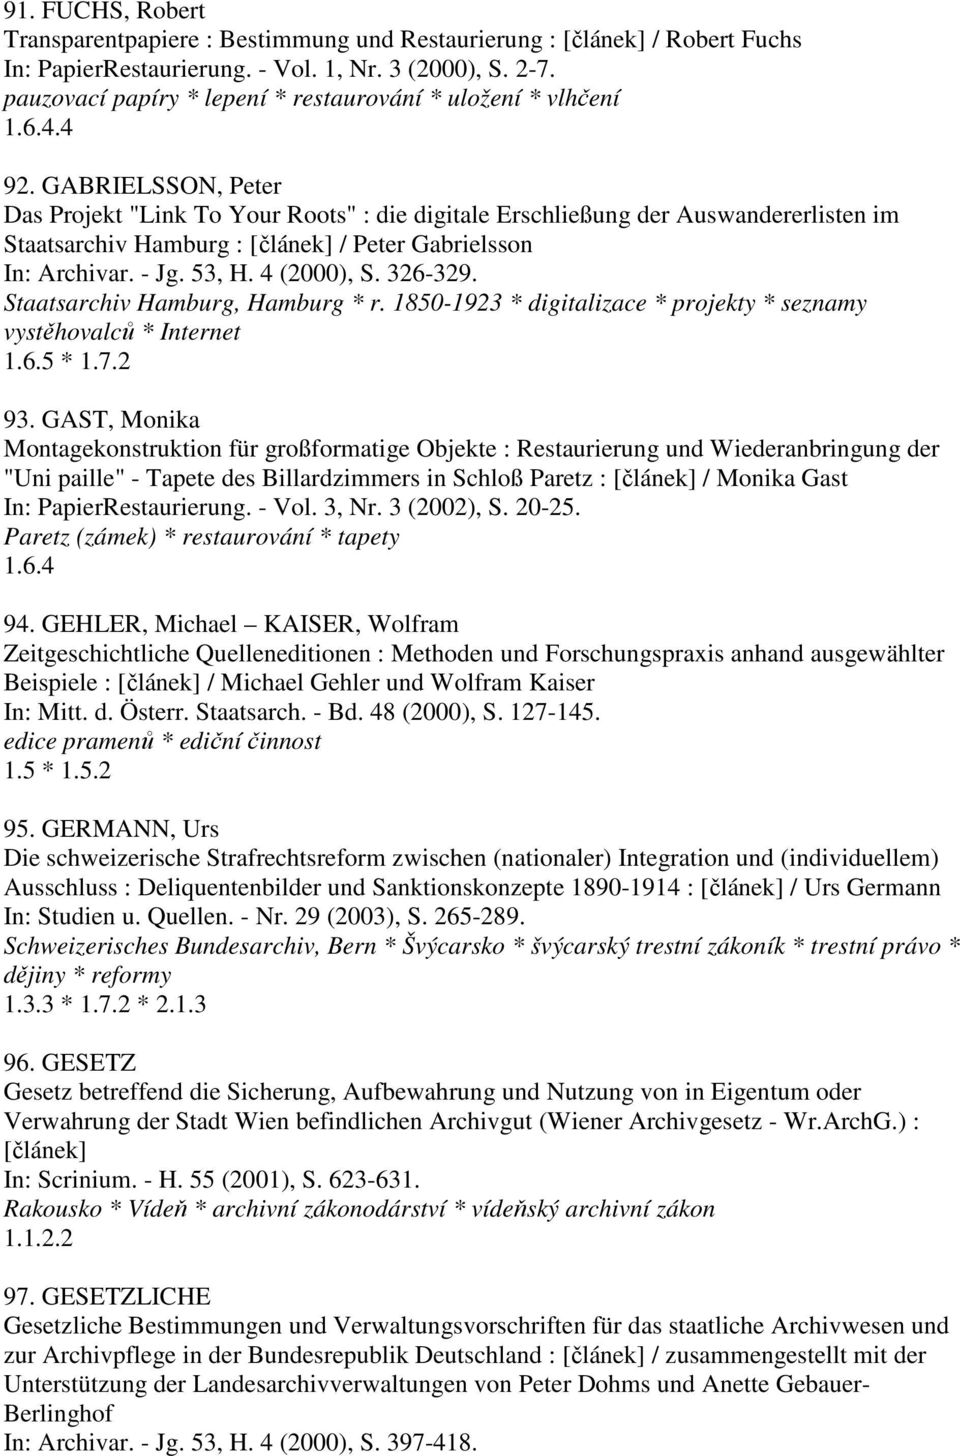 GABRIELSSON, Peter Das Projekt "Link To Your Roots" : die digitale Erschließung der Auswandererlisten im Staatsarchiv Hamburg : [článek] / Peter Gabrielsson In: Archivar. - Jg. 53, H. 4 (2000), S.